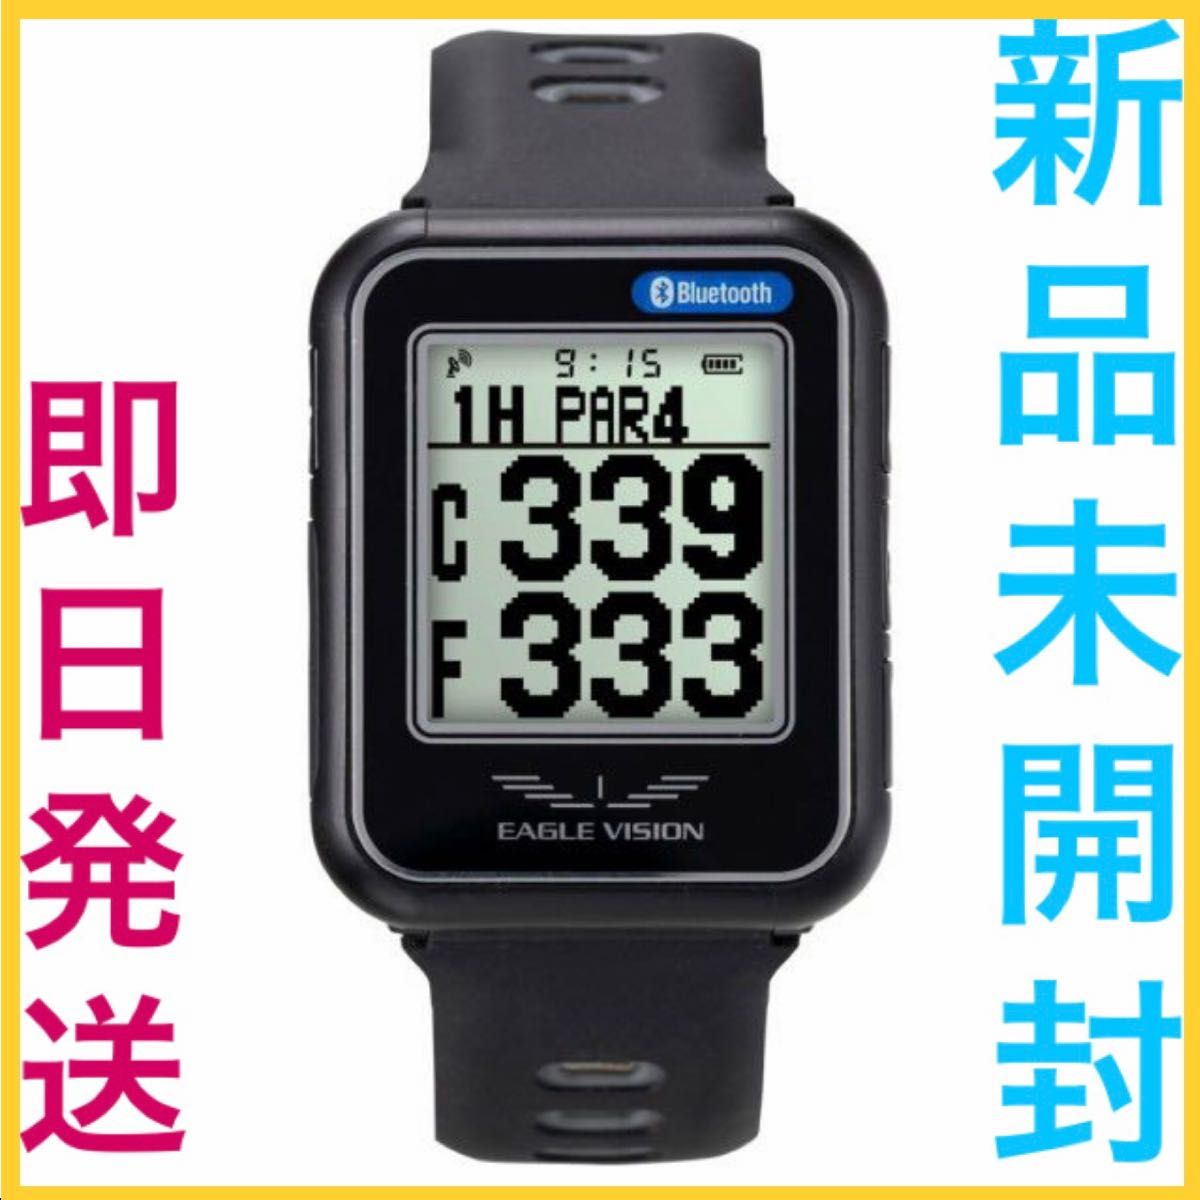 新品未開封 腕時計型GPSゴルフナビ EAGLE VISION watch… www